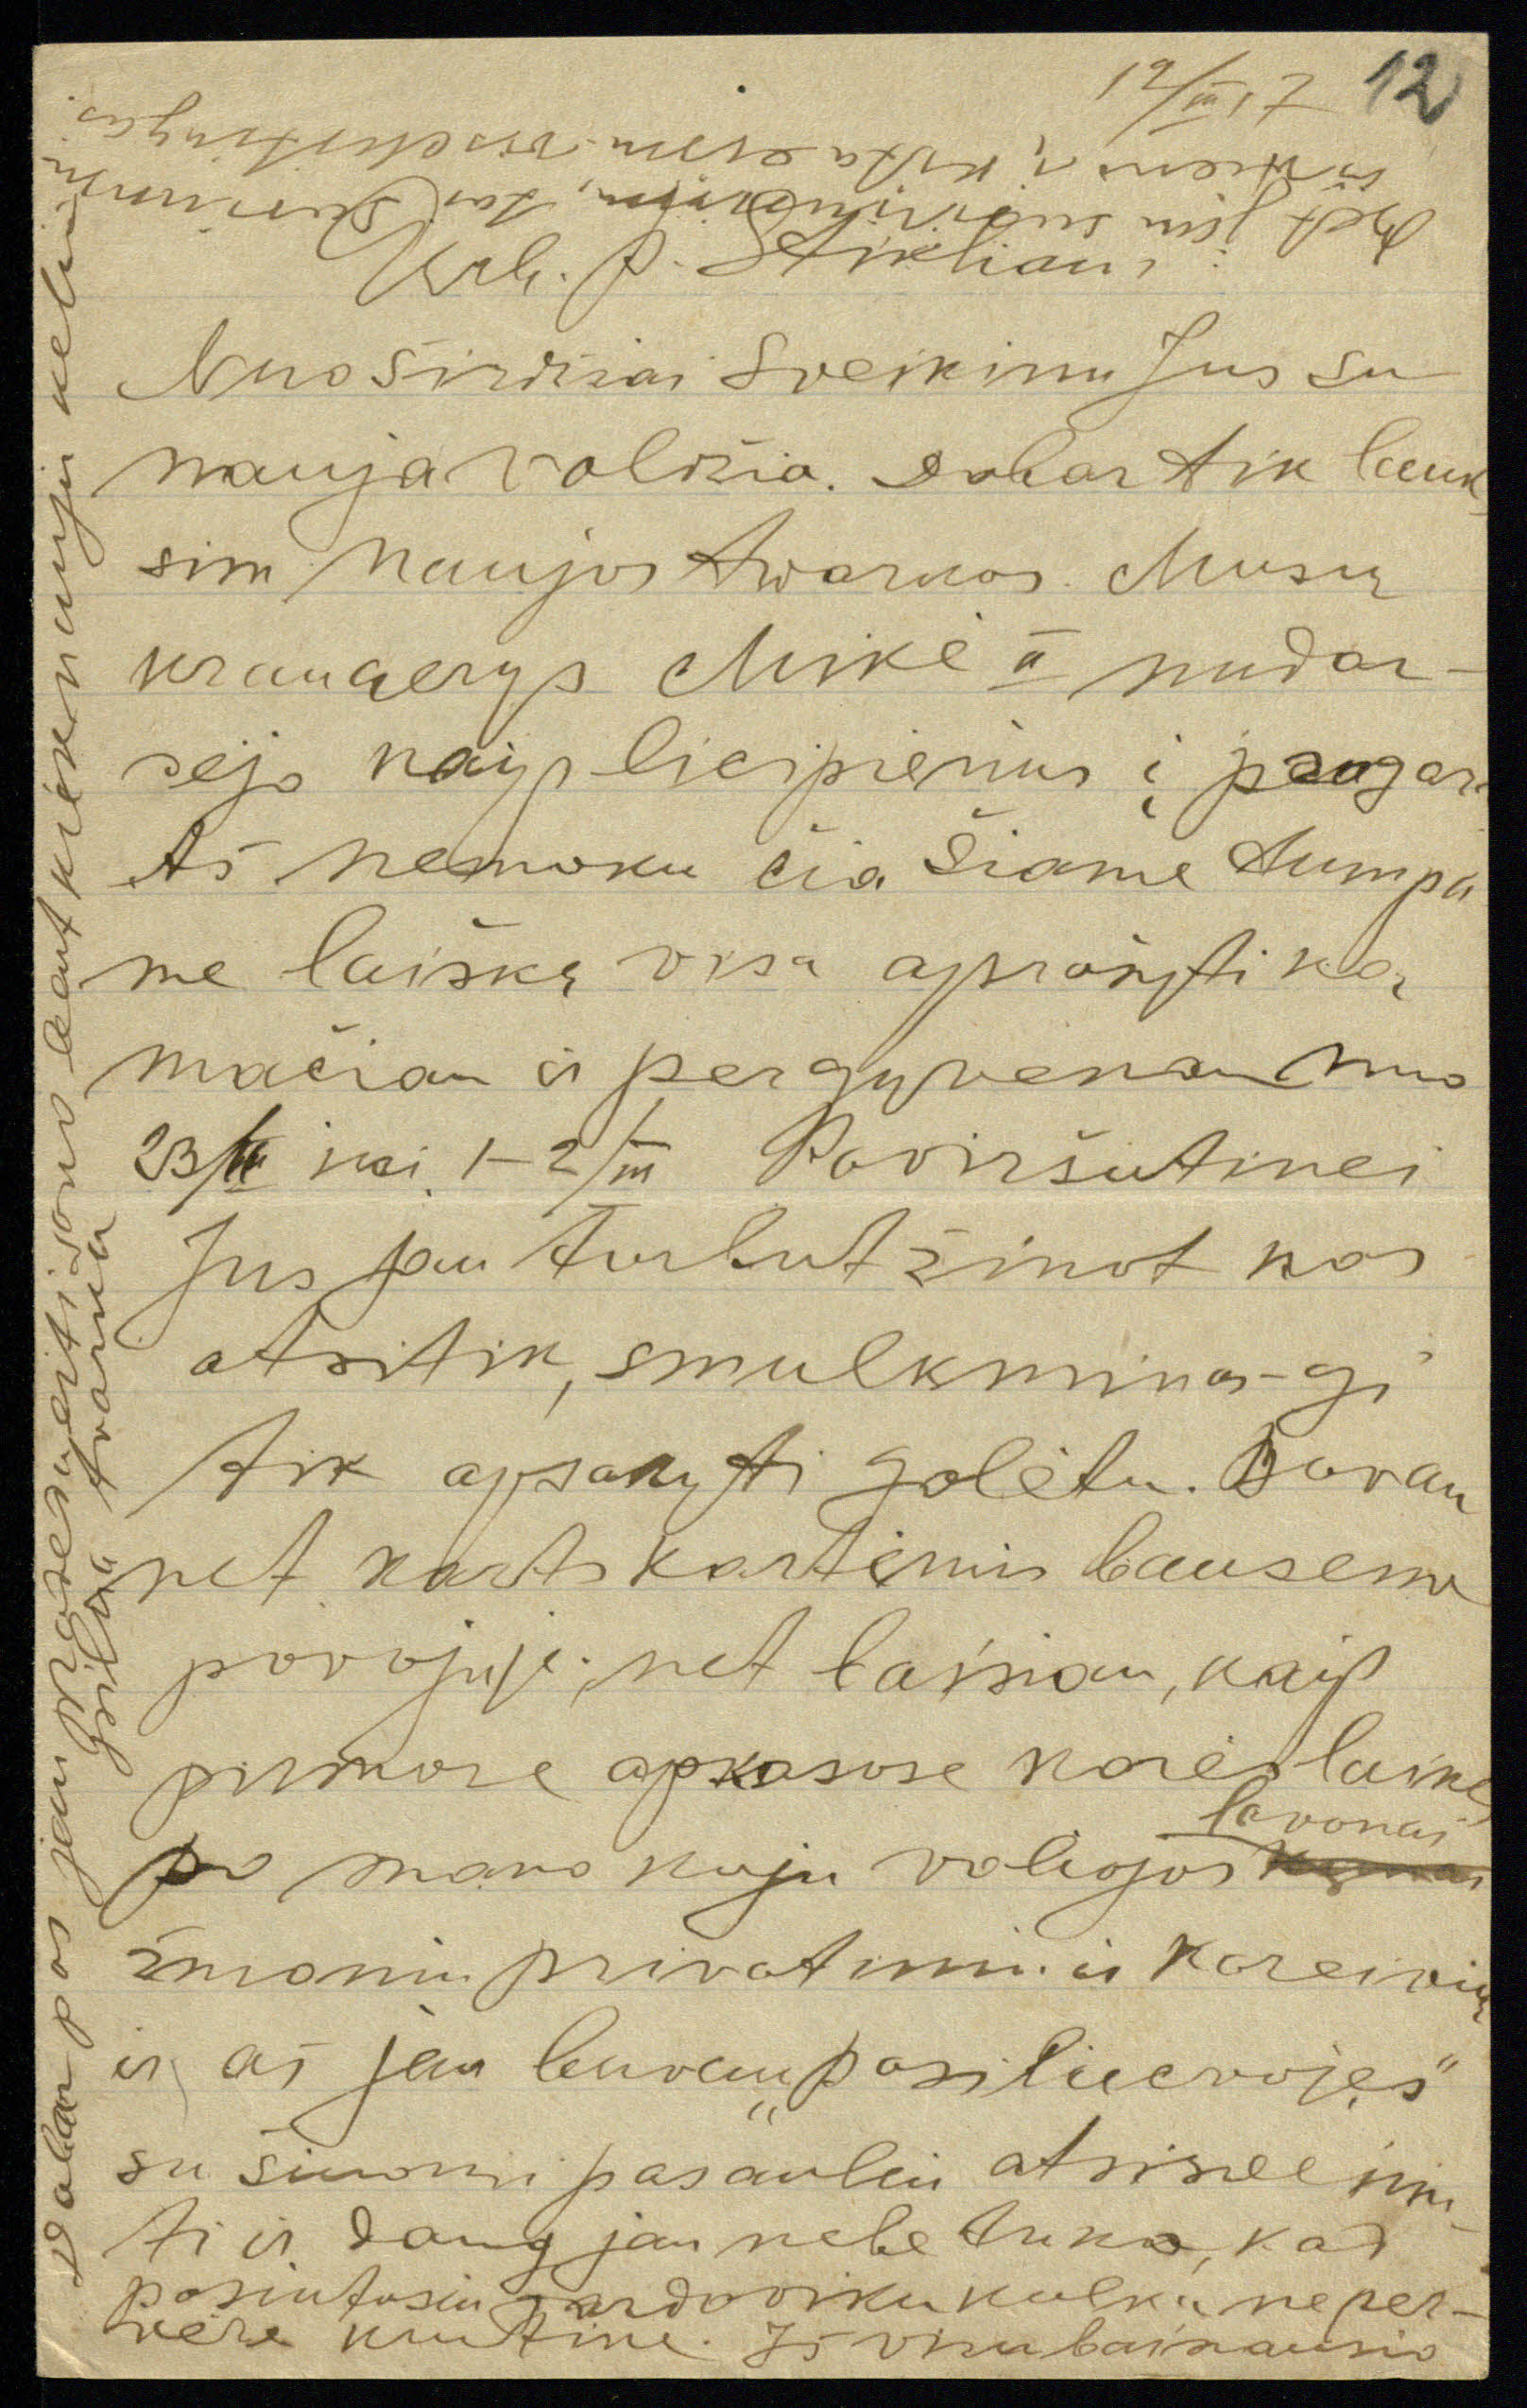 Spaudos darbuotojas Liudvikas Jakavičius (1871–1941) laiške iš Petrogrado Kostui Stikliui rašo, kad dalyvavo revoliucijos įvykiuose ir buvo sužeistas. 1917 03 12. LMAVB RS, F141-190, lap. 12r.